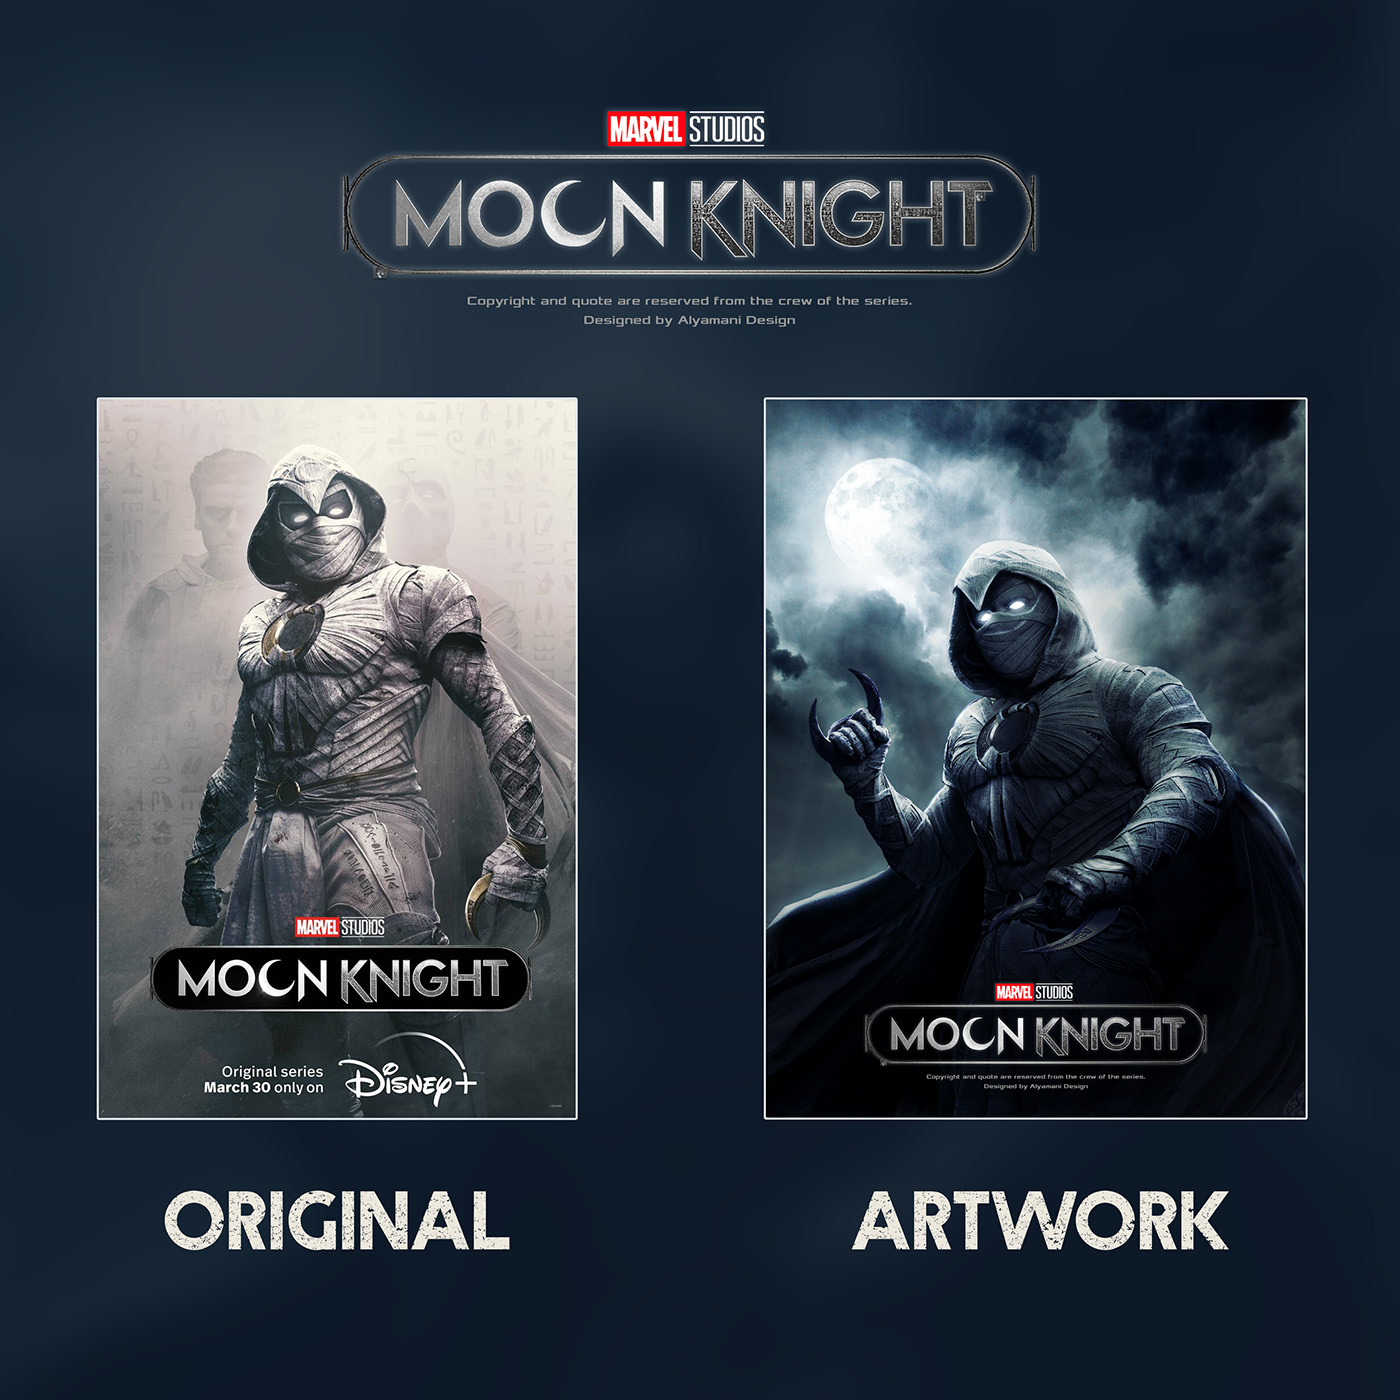 artwork Avengers Digital Art  Drawing  manipulation marvel moonknight   MoonKnight poster movie poster poster